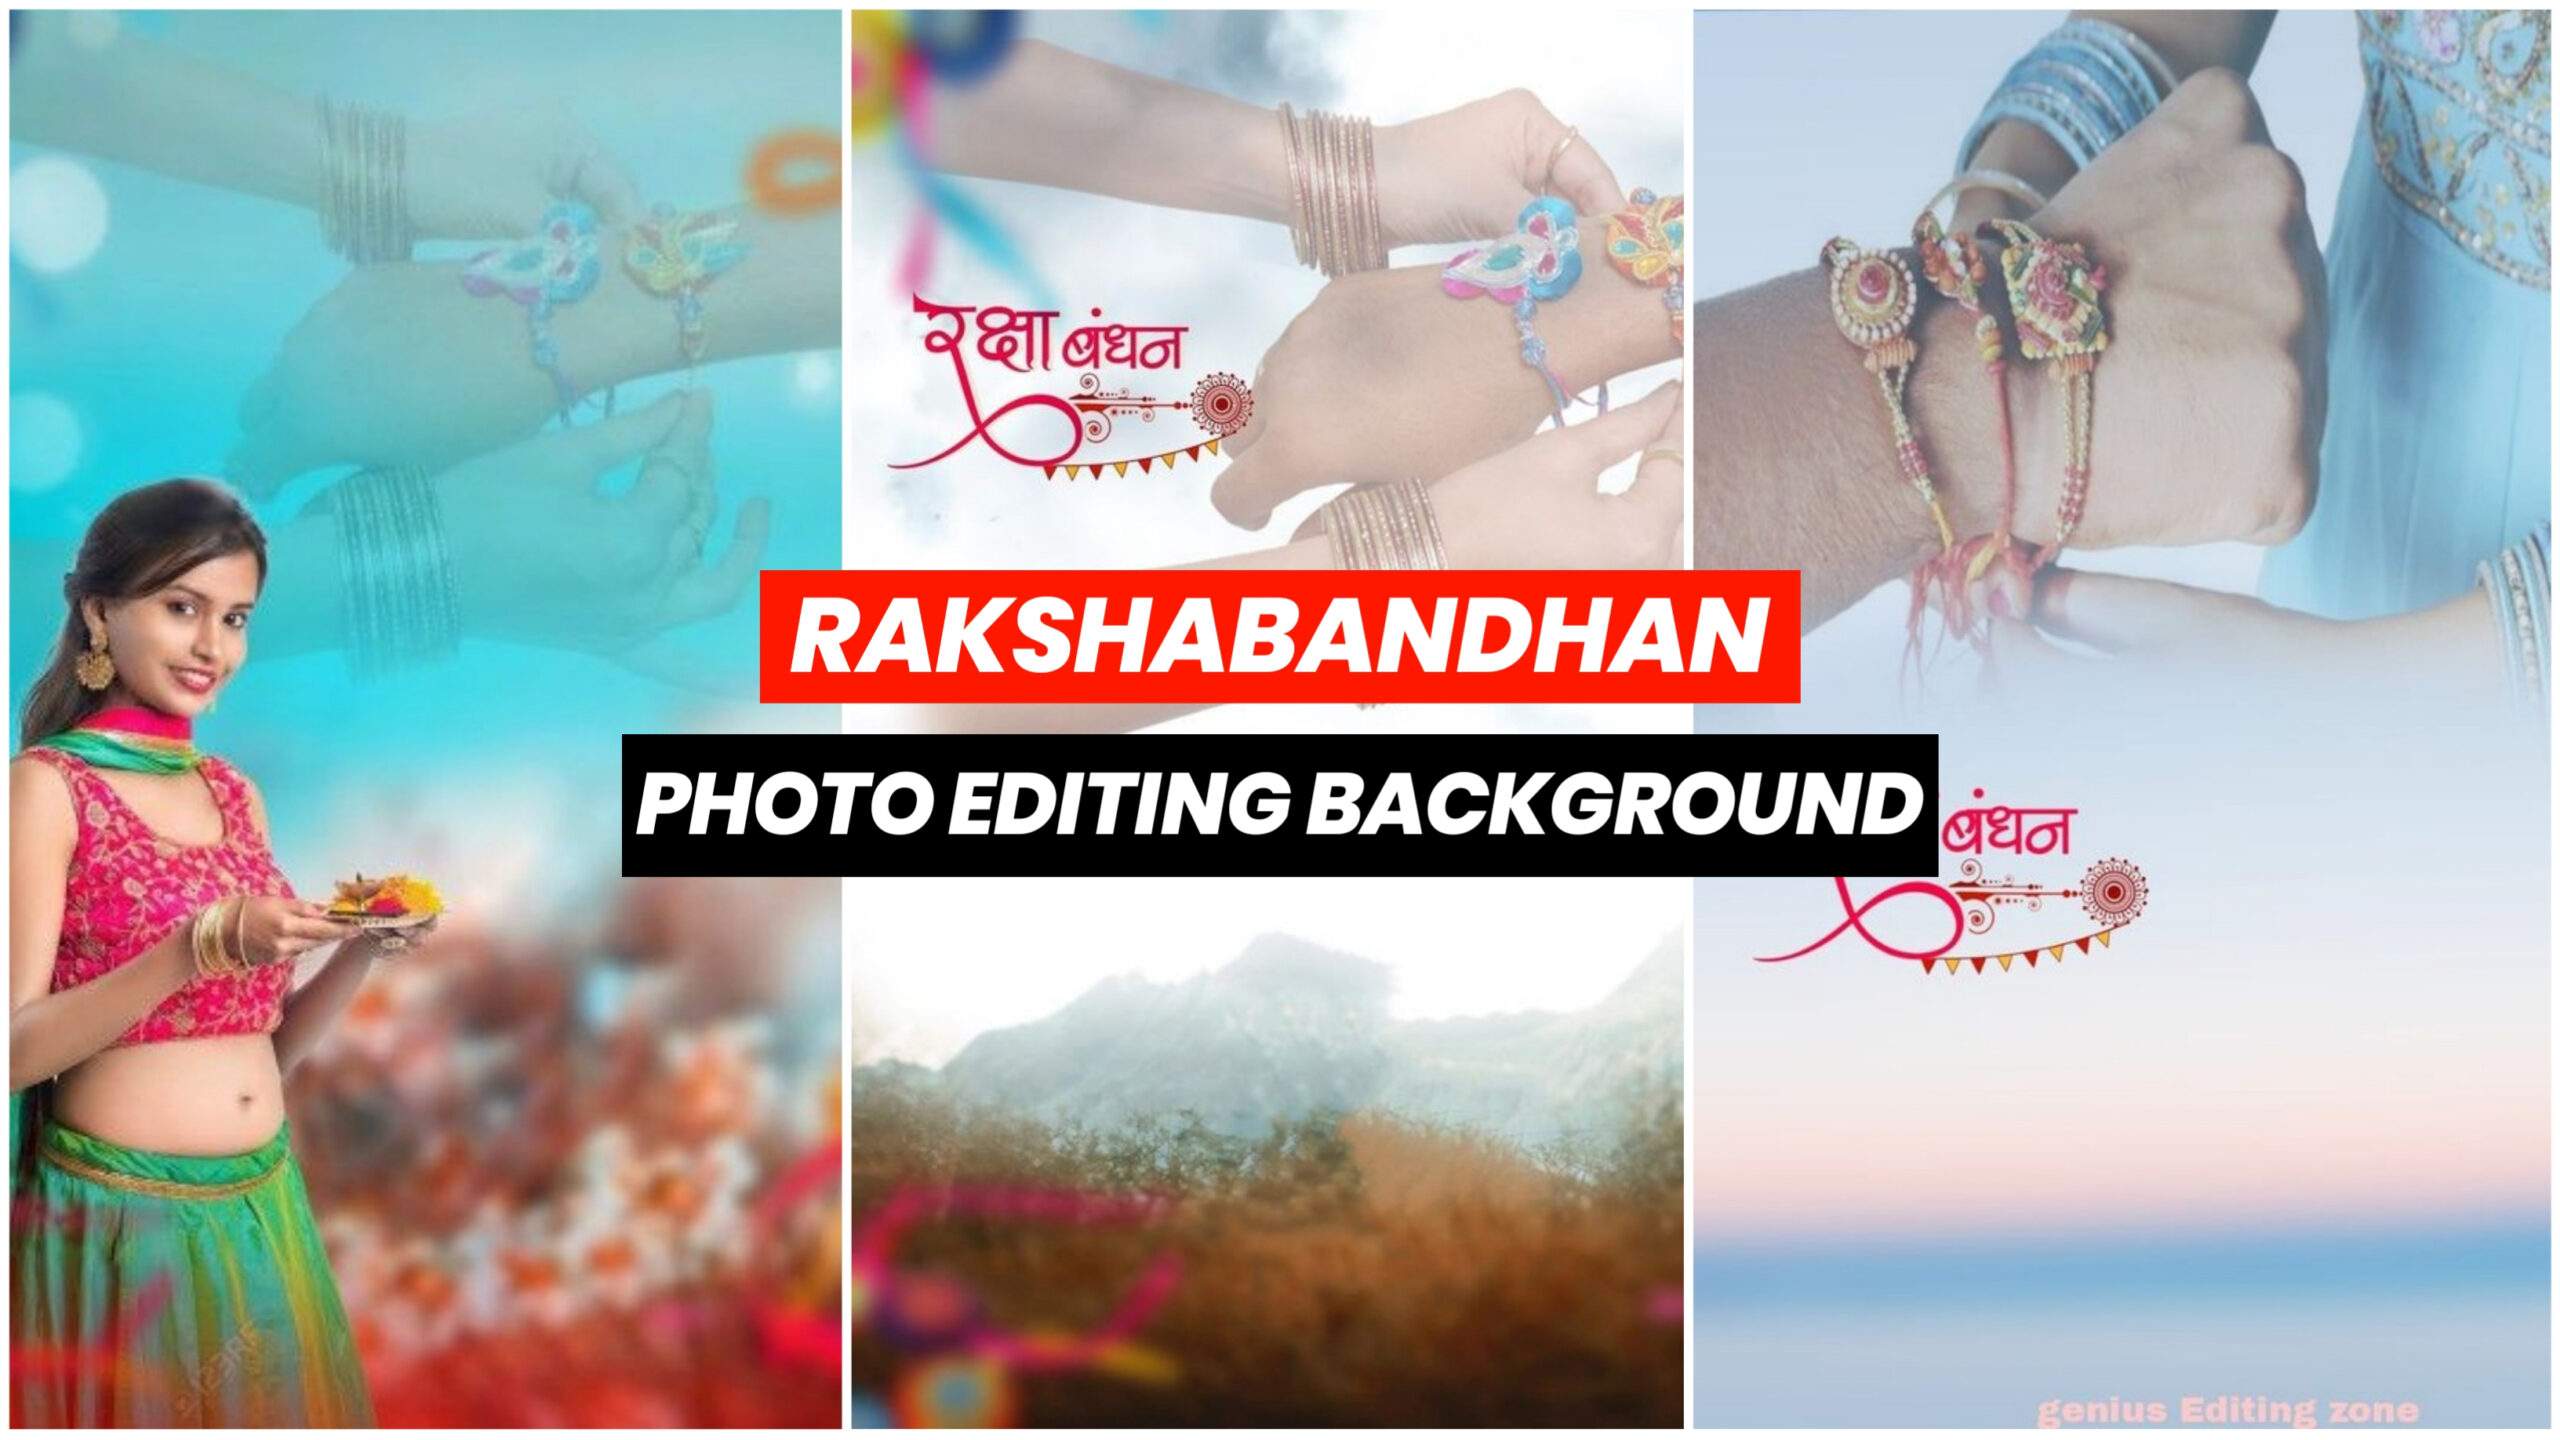 Rakshabandhan Photo Editing background with Girls 